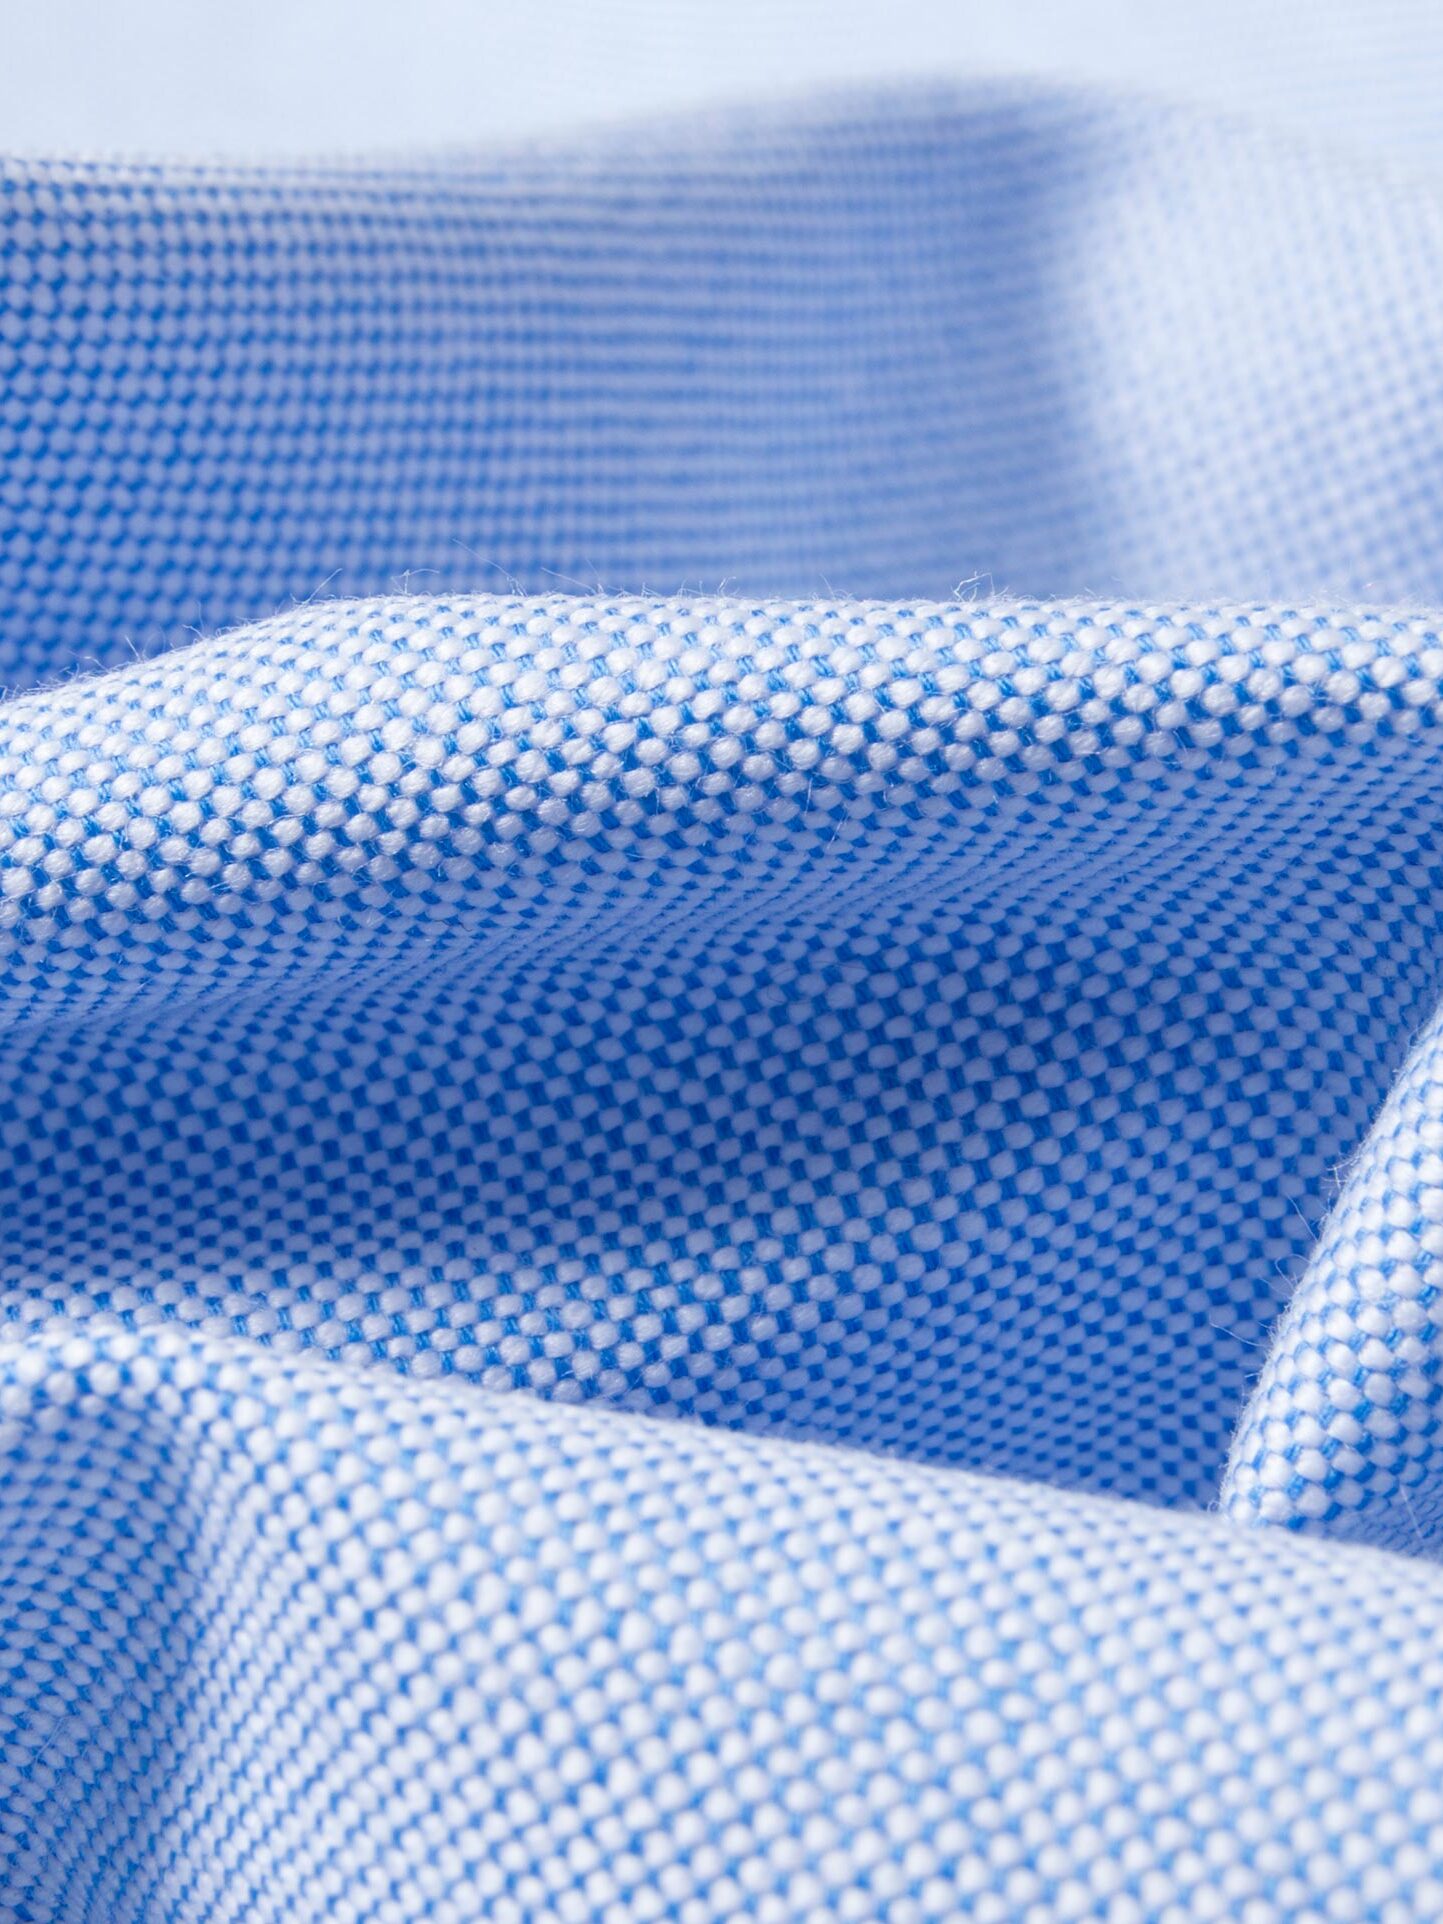 Light Blue Oxford Cloth Shirts by Proper Cloth